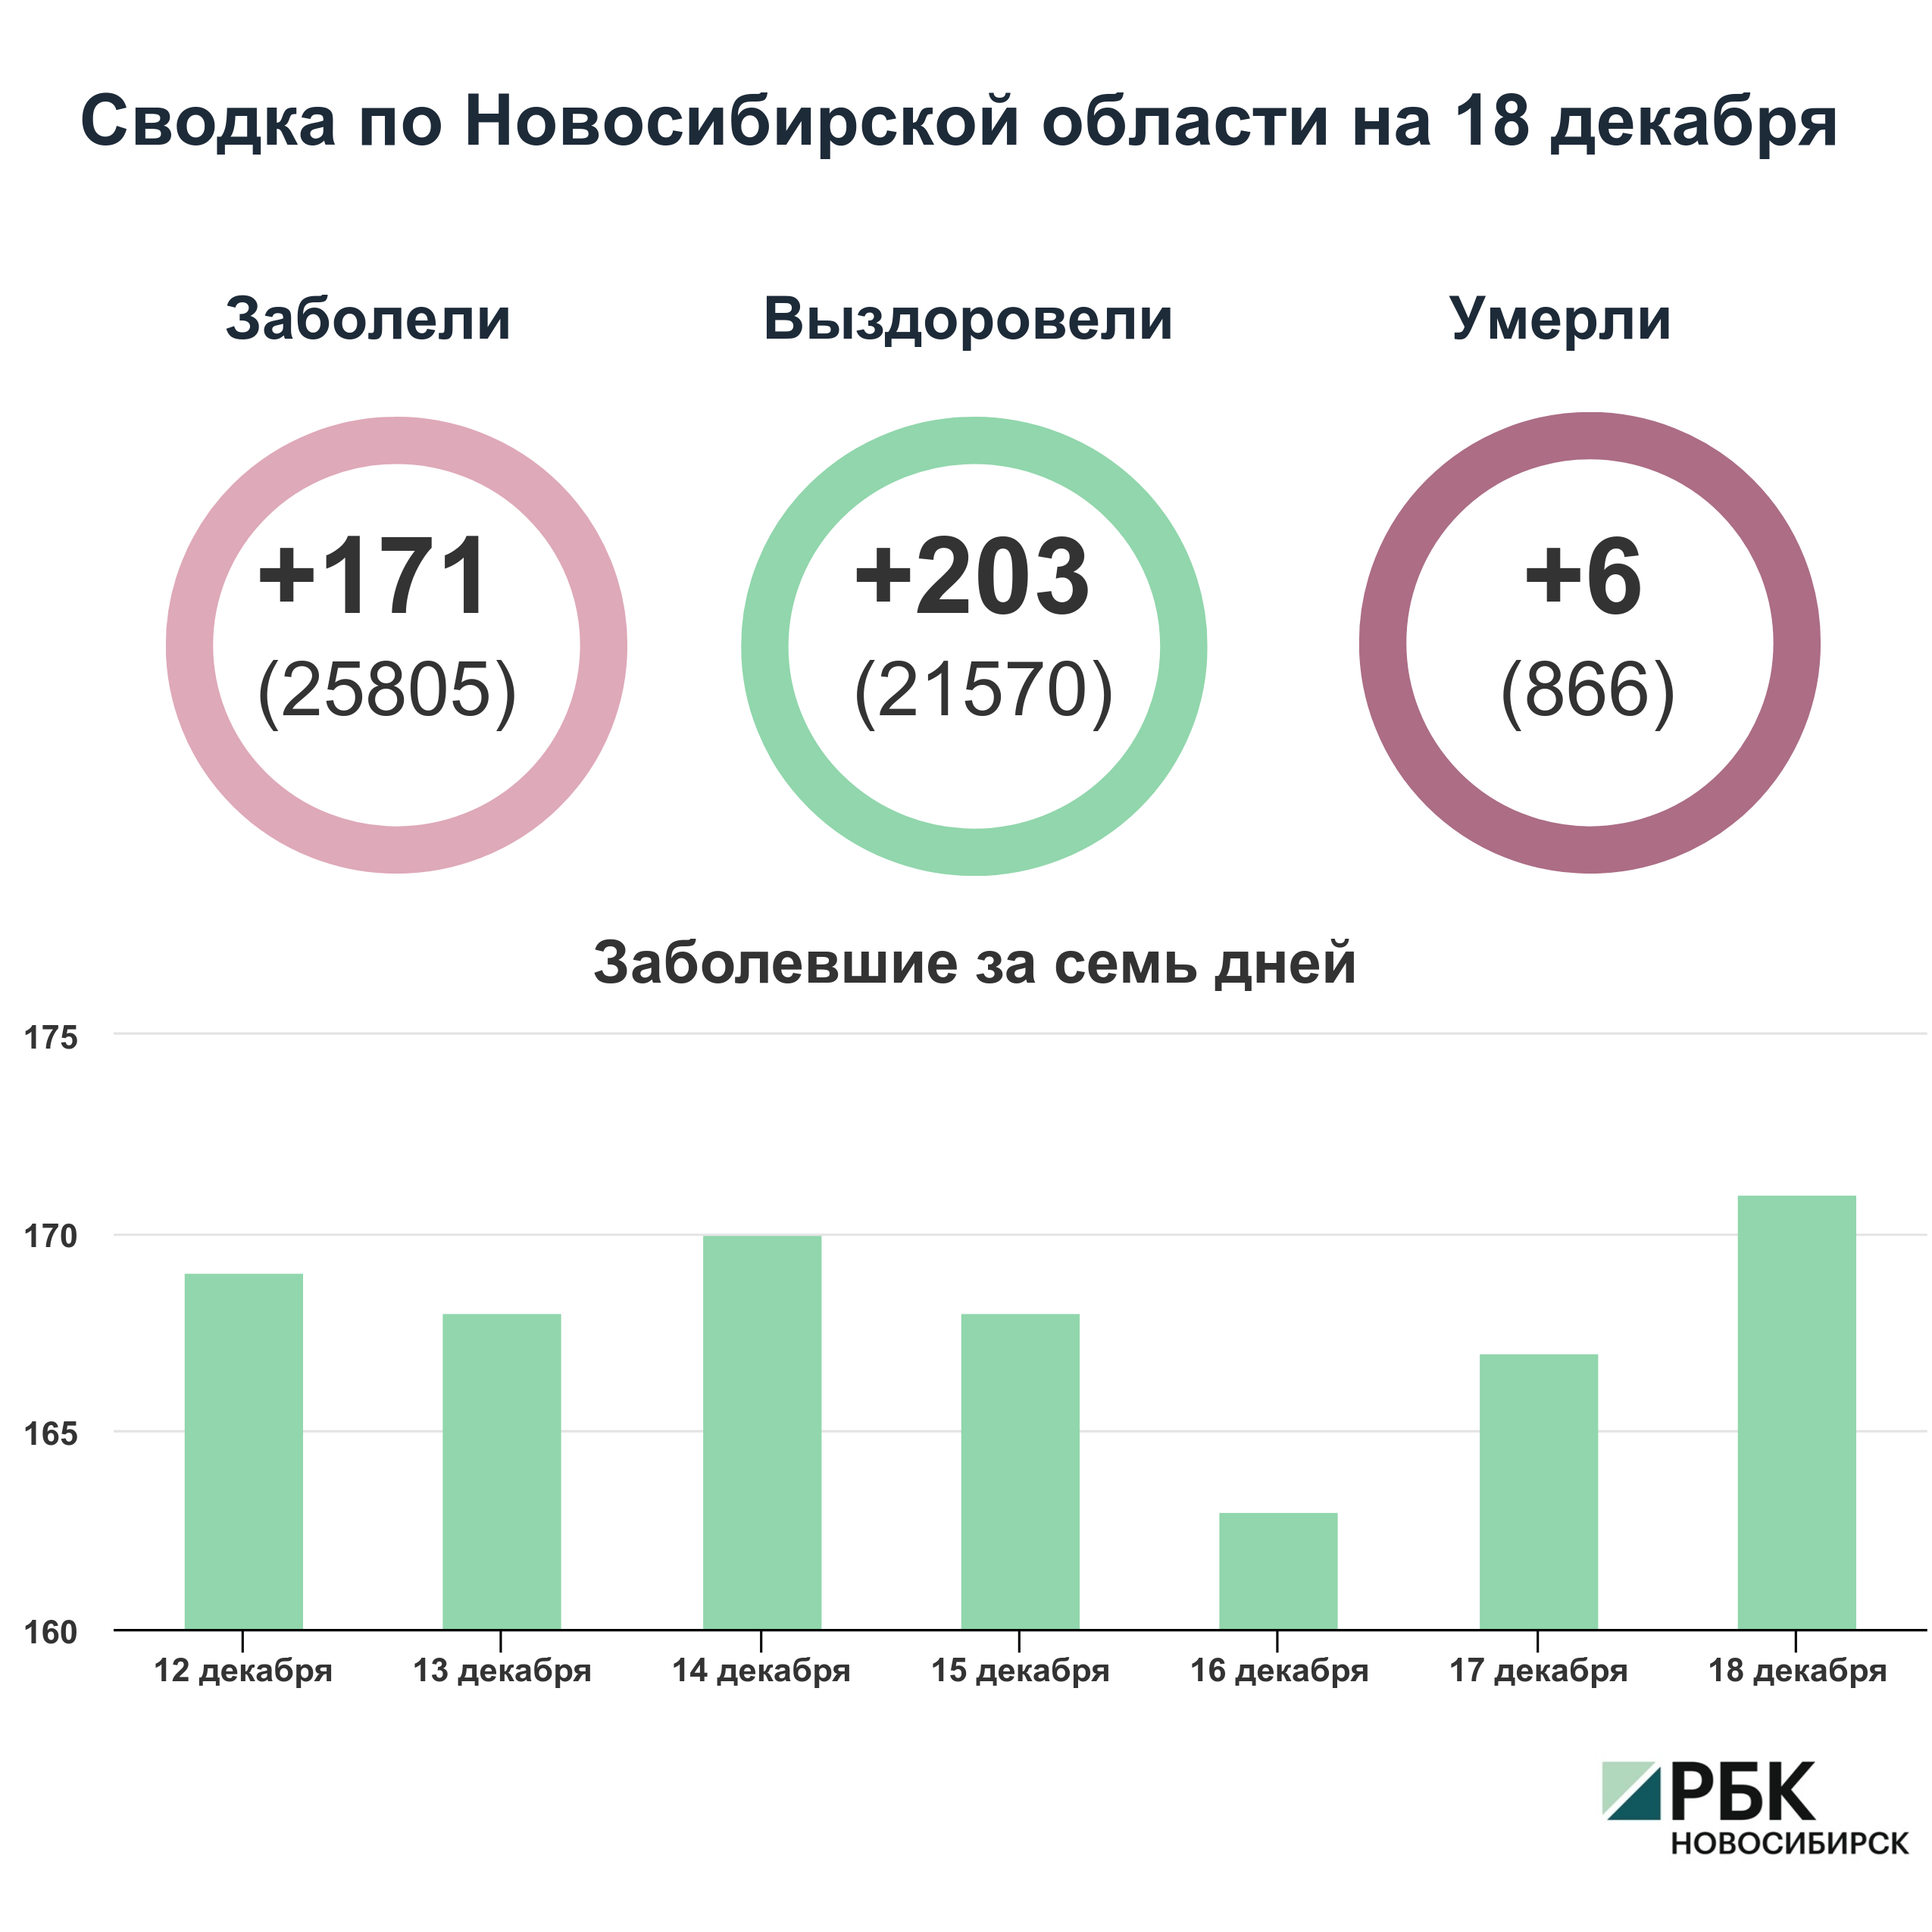 Коронавирус в Новосибирске: сводка на 18 декабря